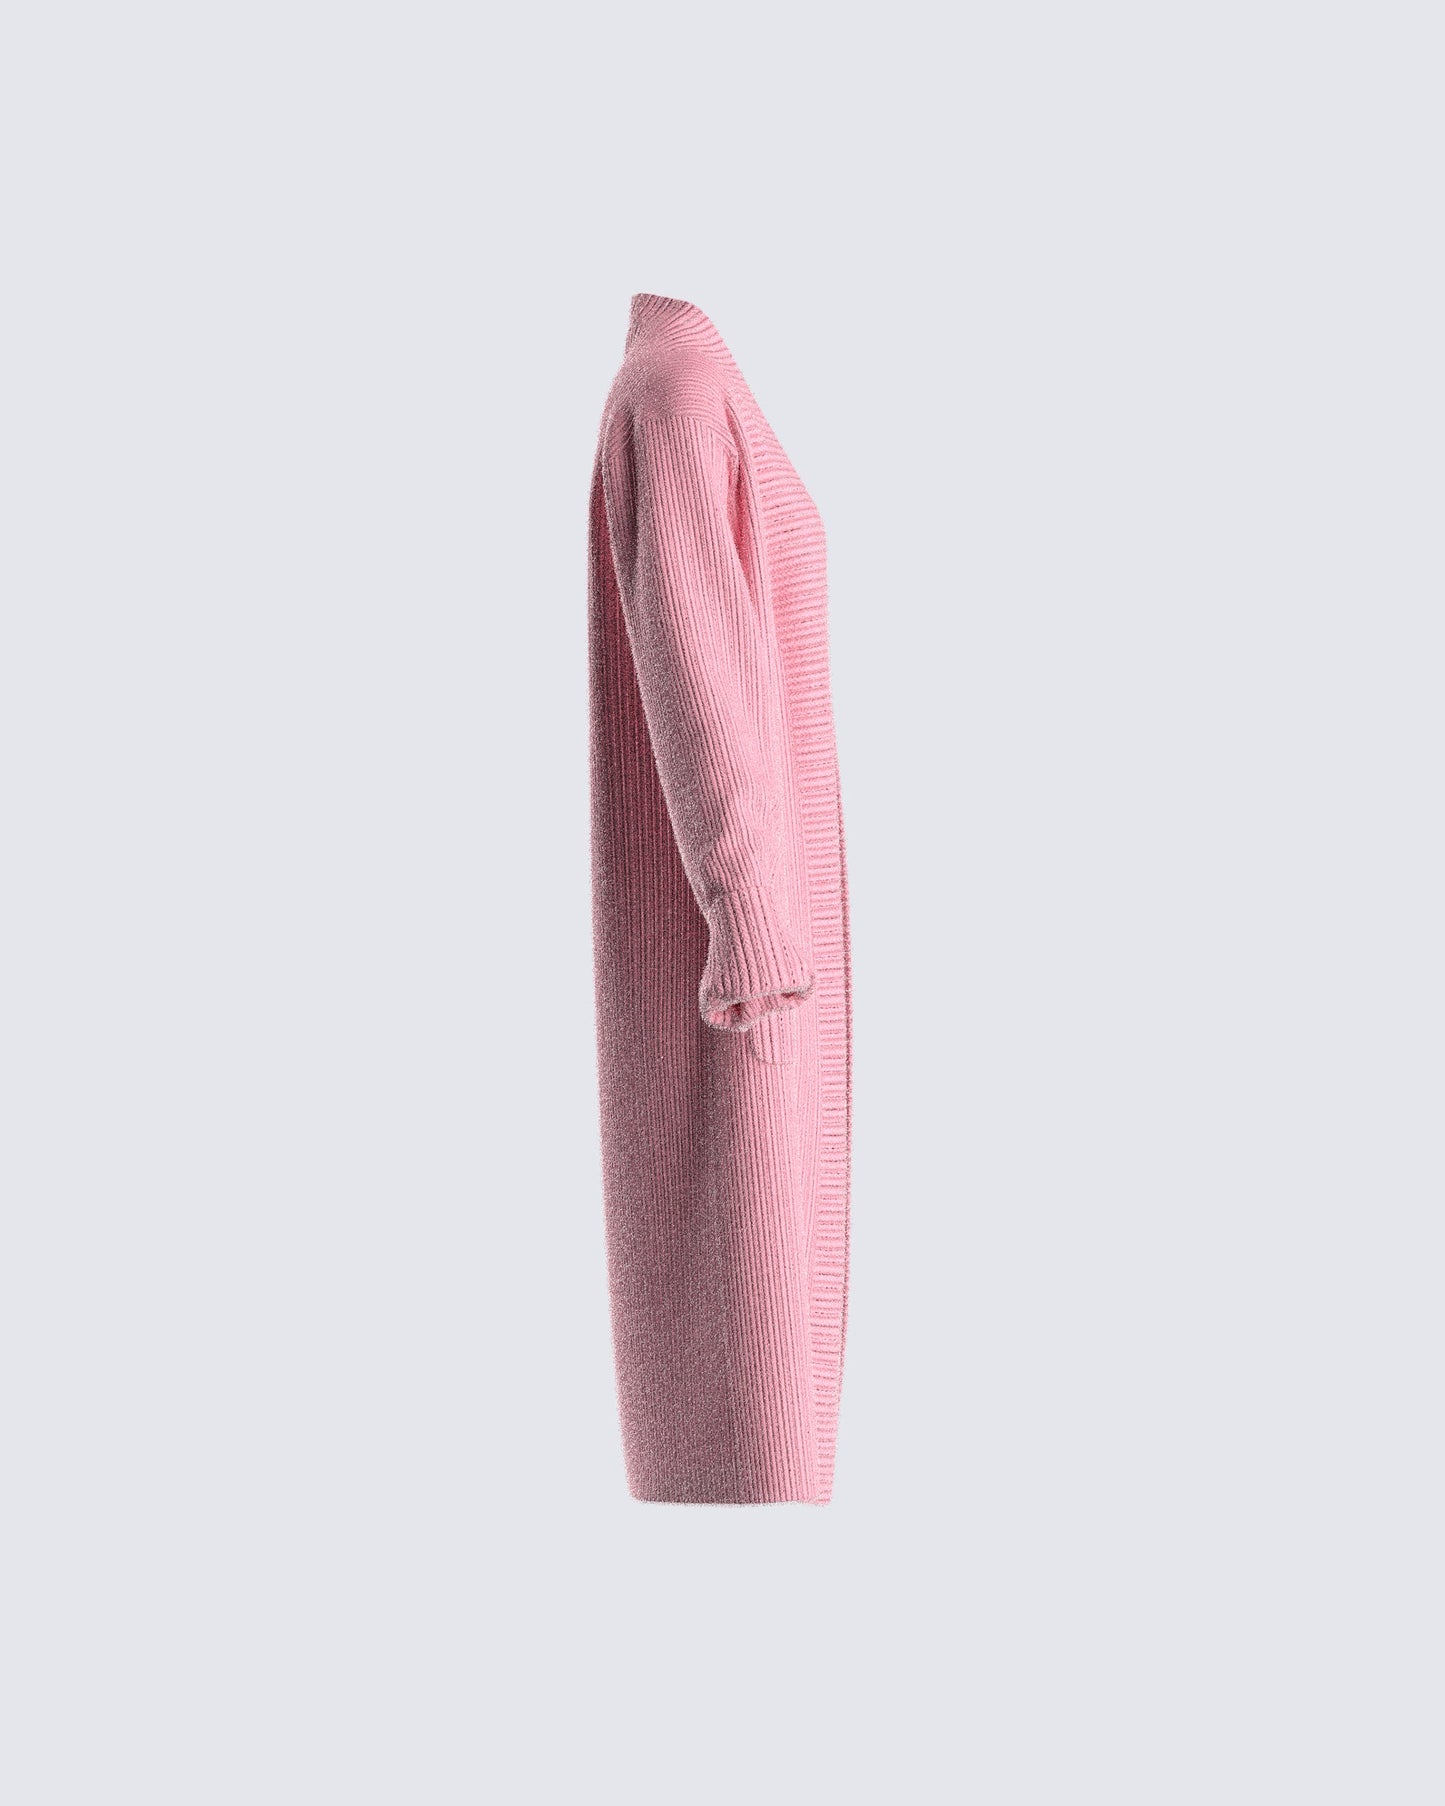 Lumi Pink Knit Cardigan